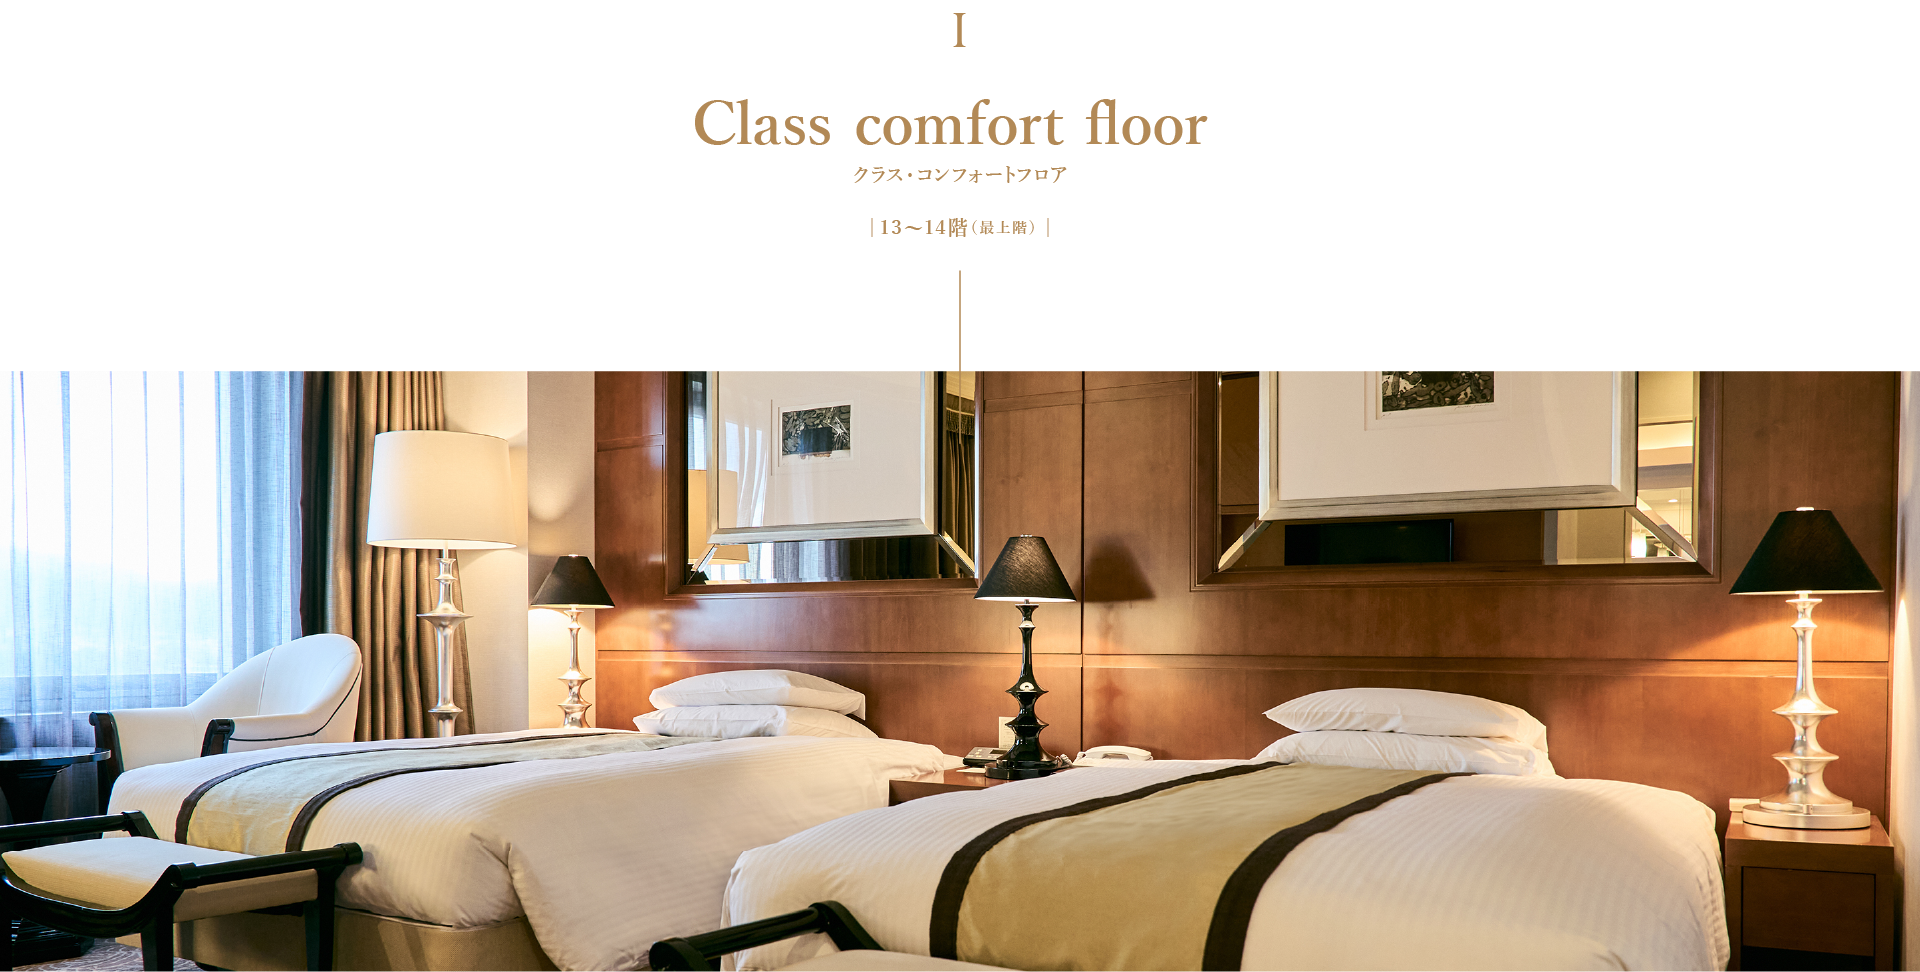 Class comfort floor